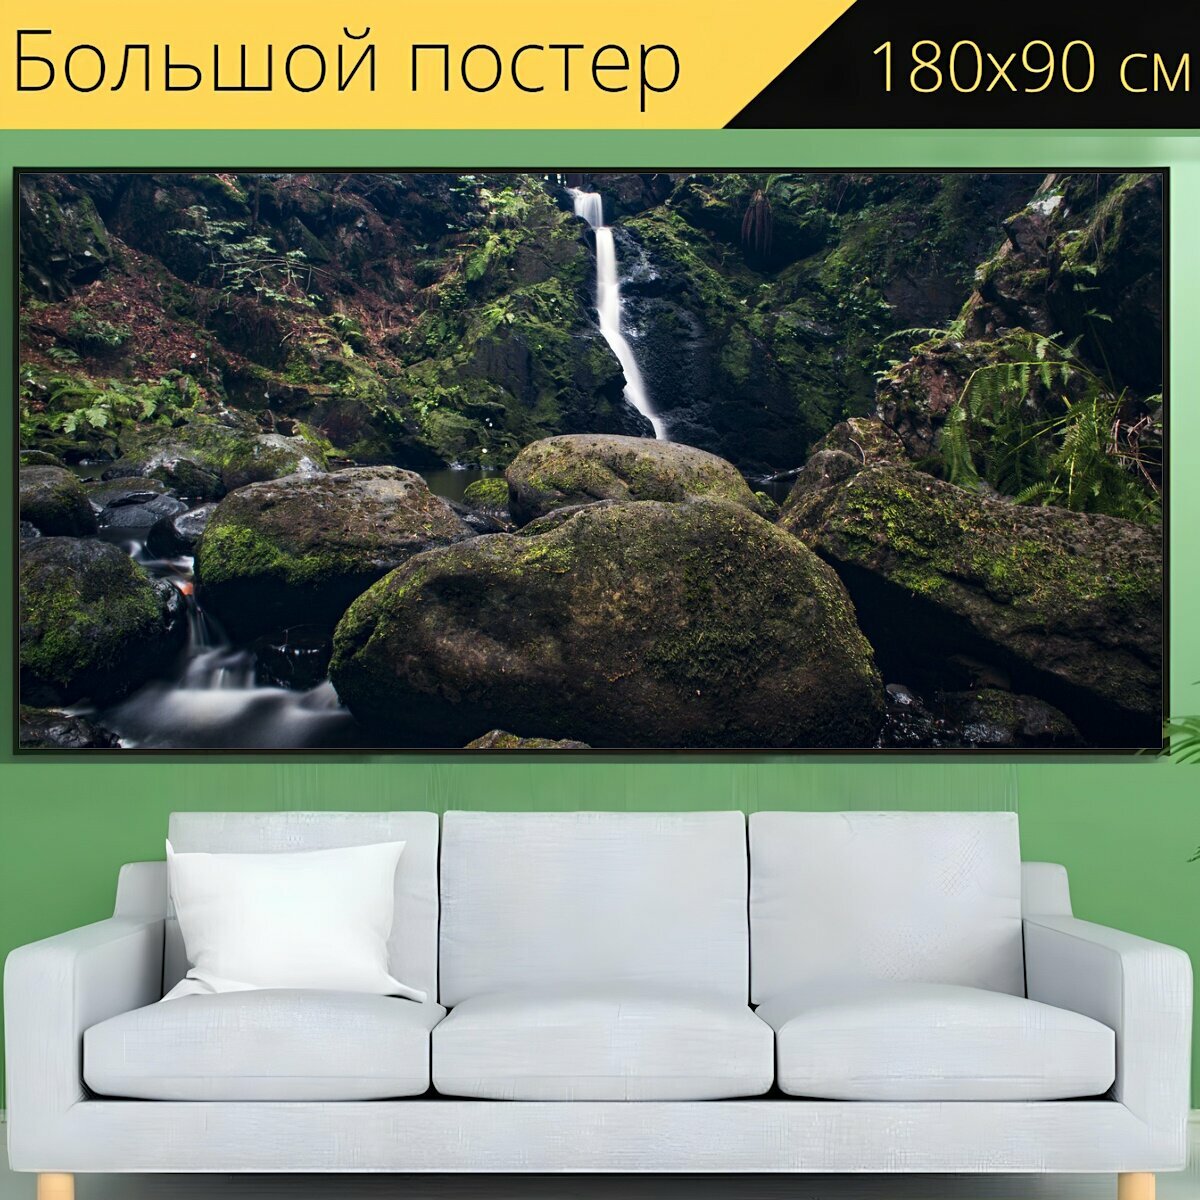 Большой постер "Природа, воды, водопад" 180 x 90 см. для интерьера